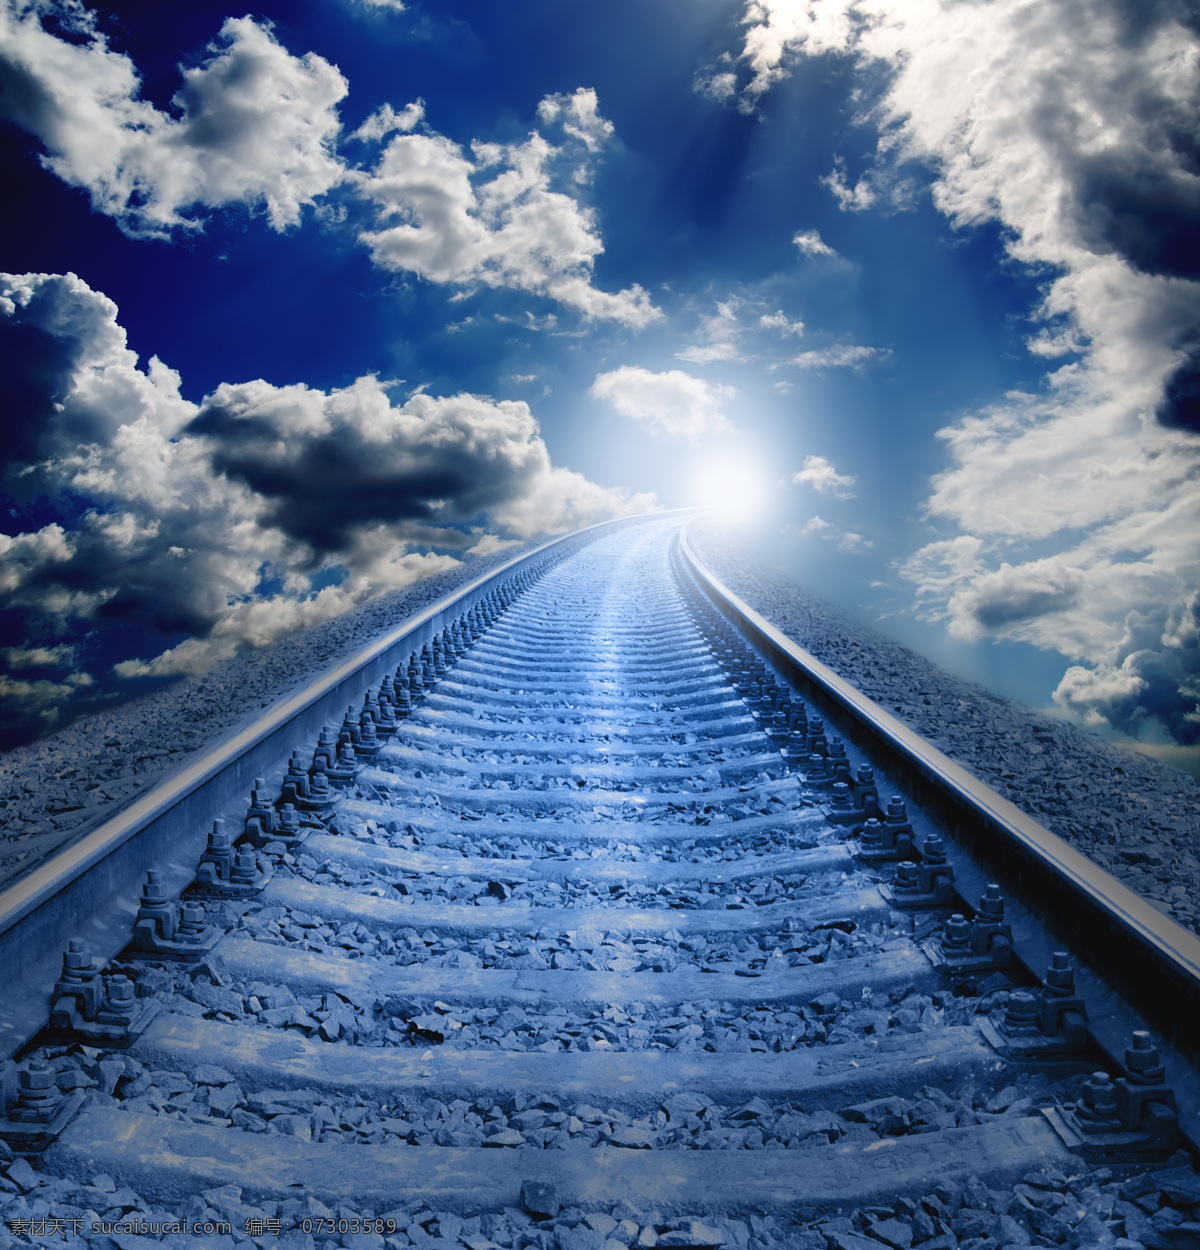 铁路背景素材 阳光 天空 乌云 地铁 火车 铁路 铁路摄影 道路 交通 运输 铁路背景 自然风光 道路摄影 环境家居 蓝色